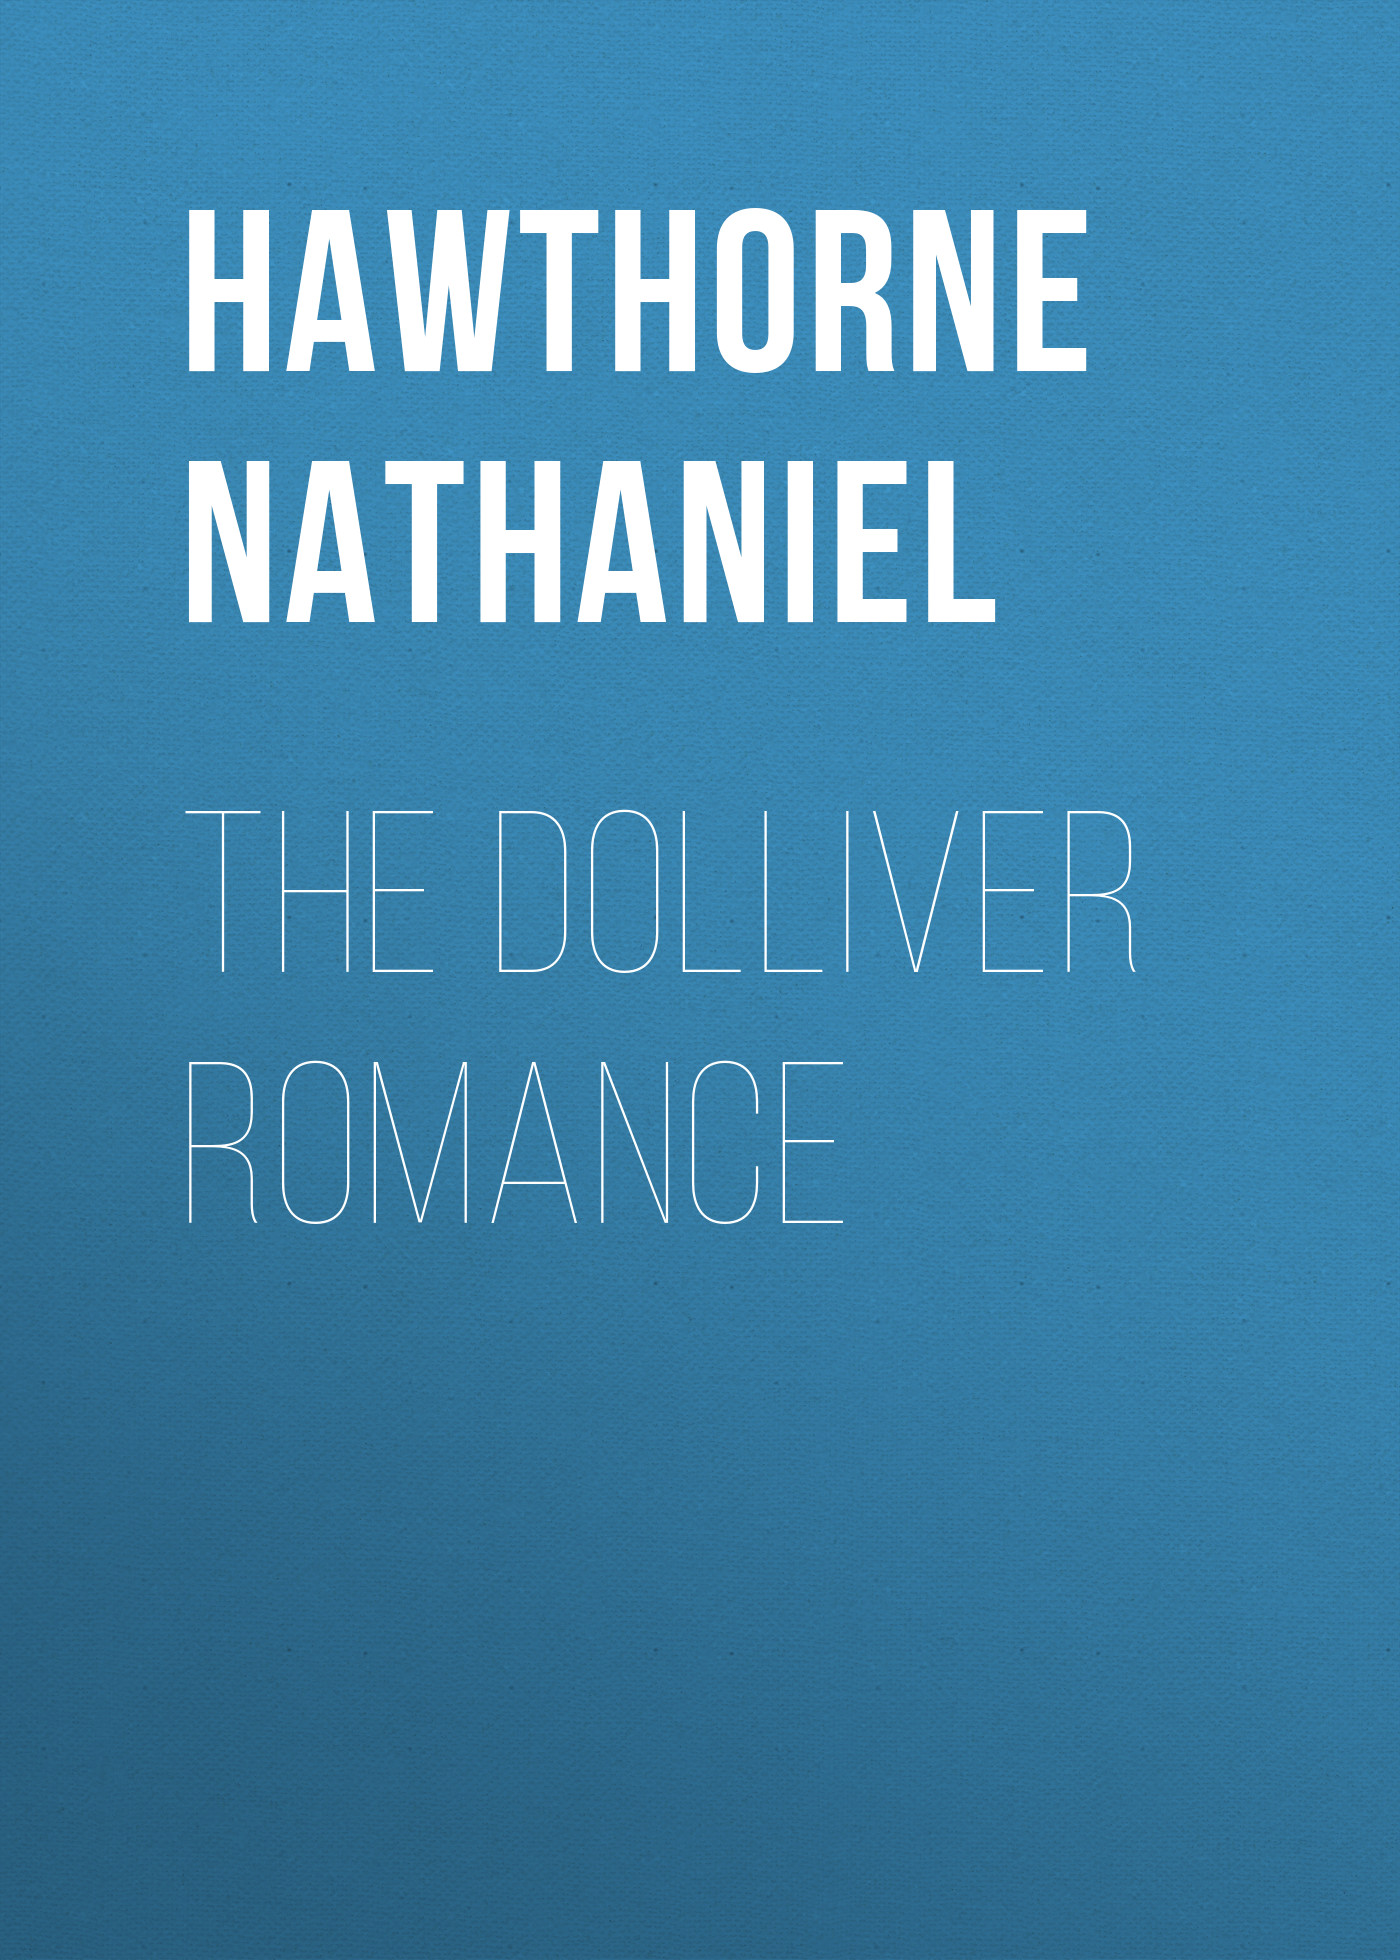 Книга The Dolliver Romance из серии , созданная Nathaniel Hawthorne, может относится к жанру Литература 19 века, Зарубежная старинная литература, Зарубежная классика. Стоимость электронной книги The Dolliver Romance с идентификатором 25560148 составляет 0 руб.